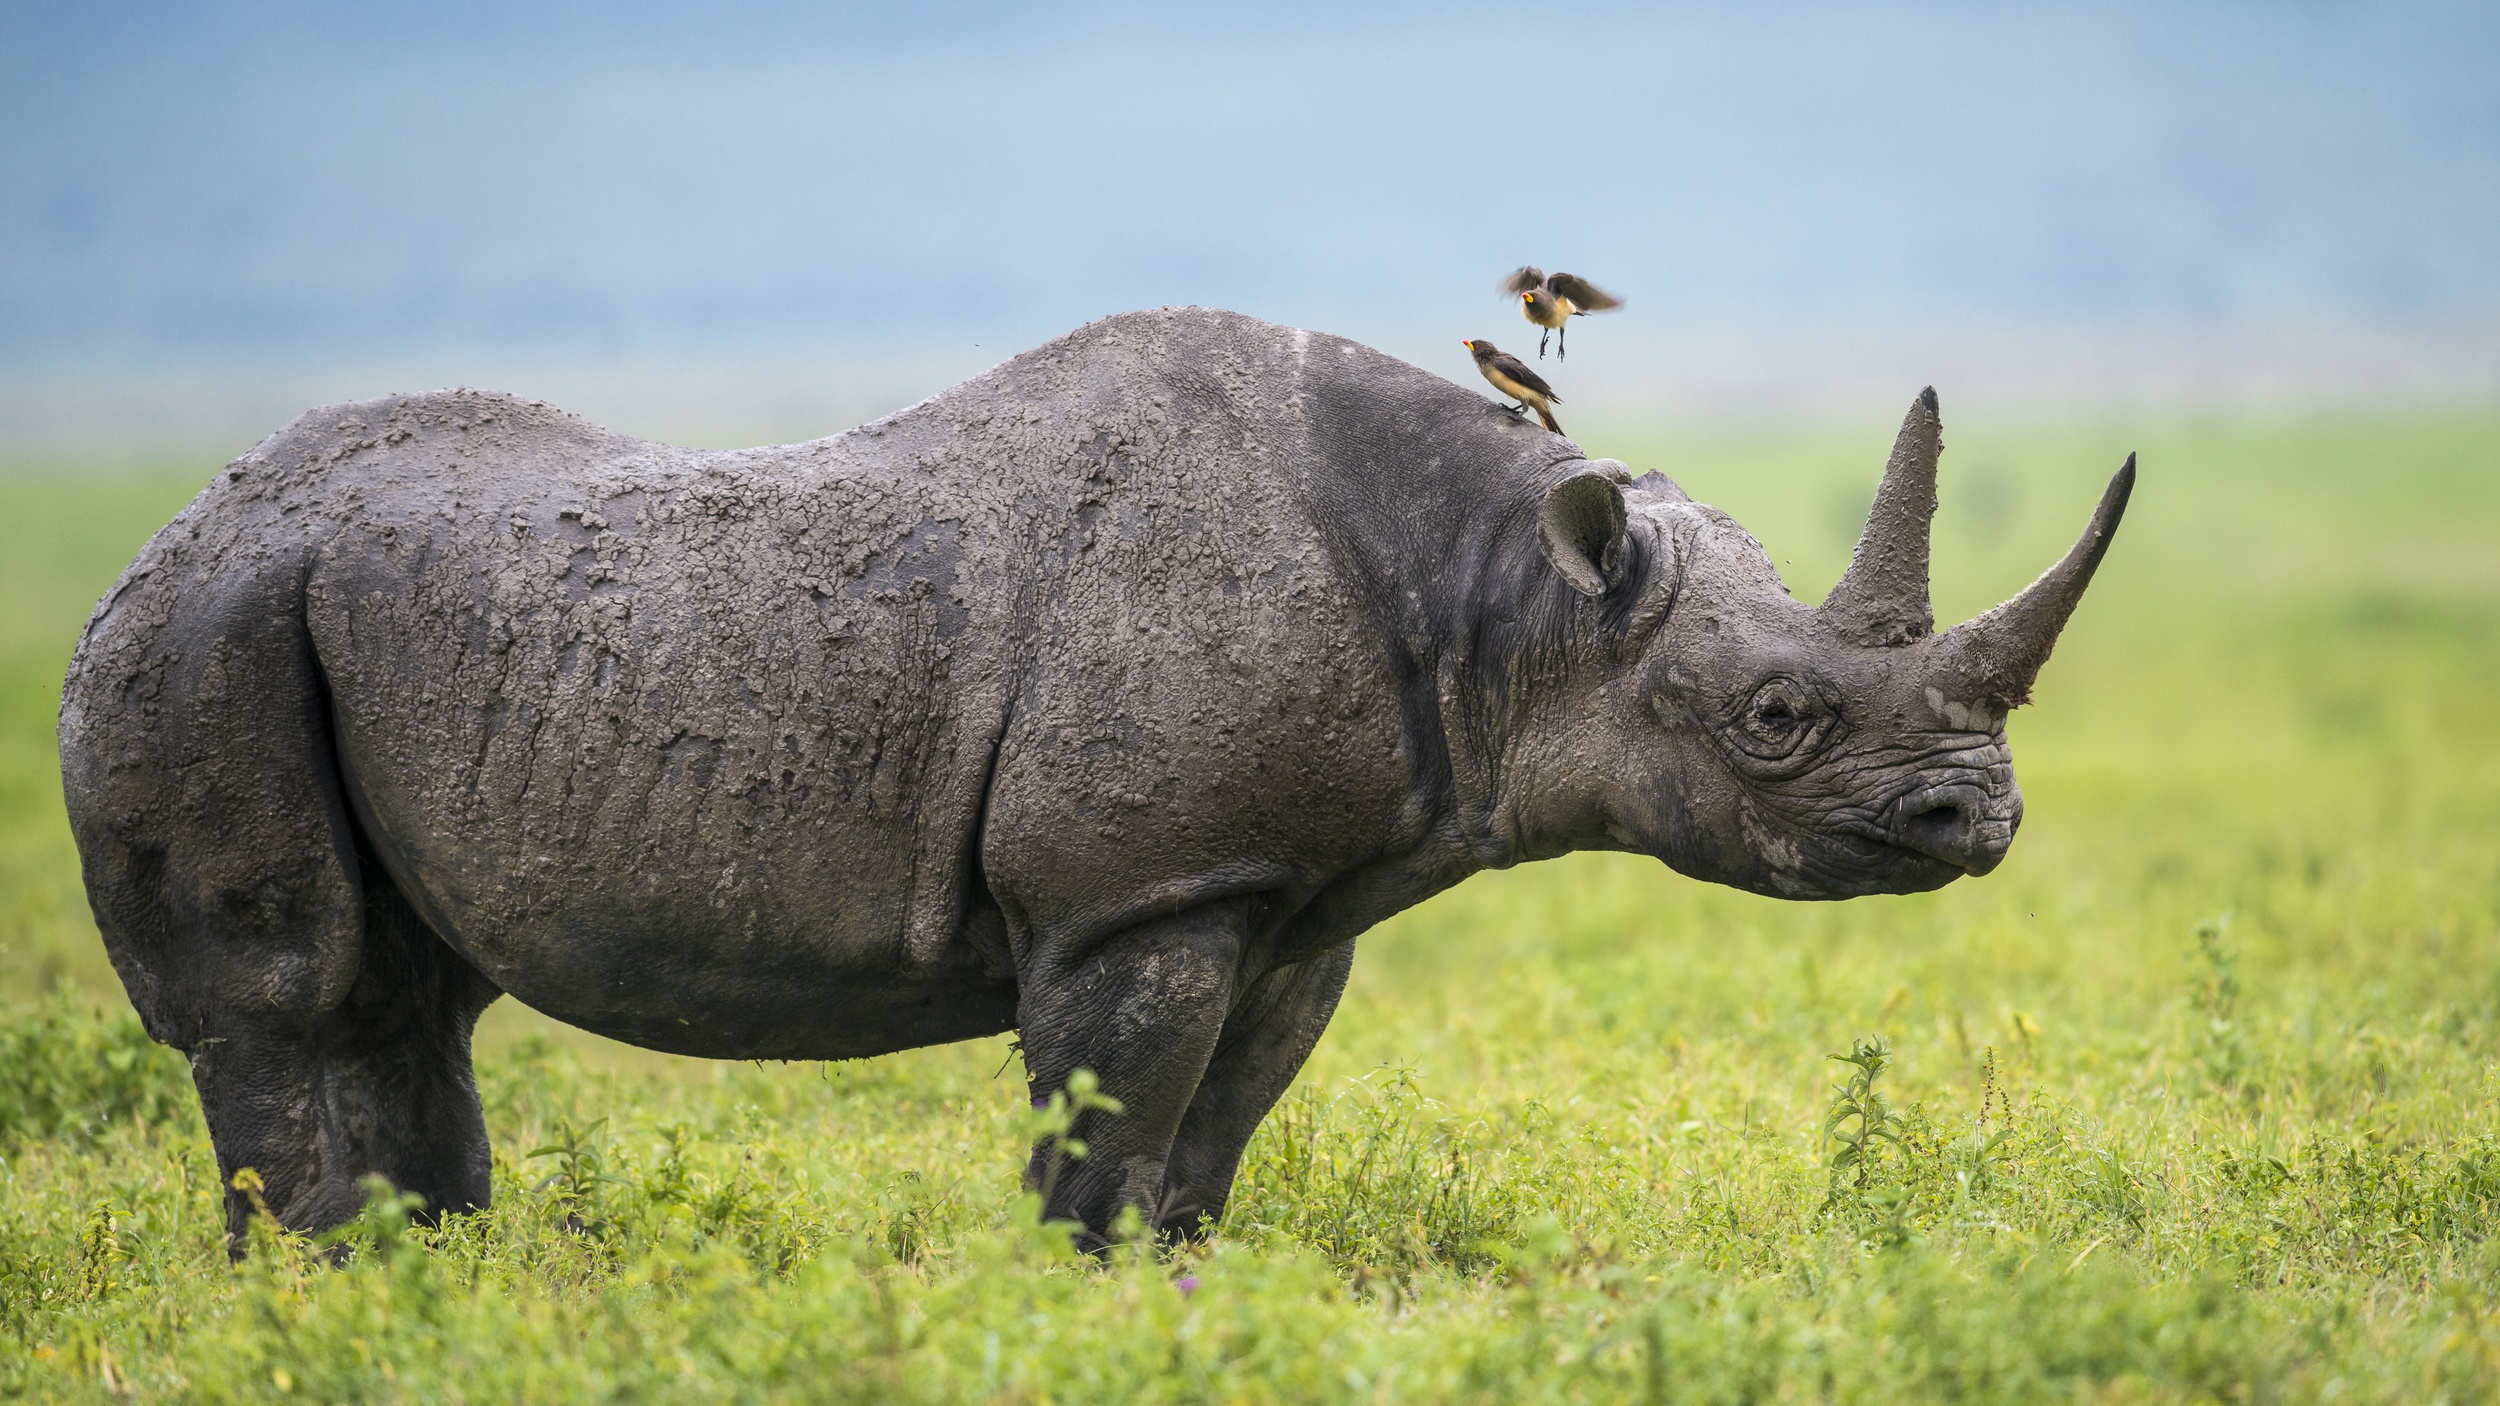 Скачать обои бесплатно Животные, Носорог картинка на рабочий стол ПК